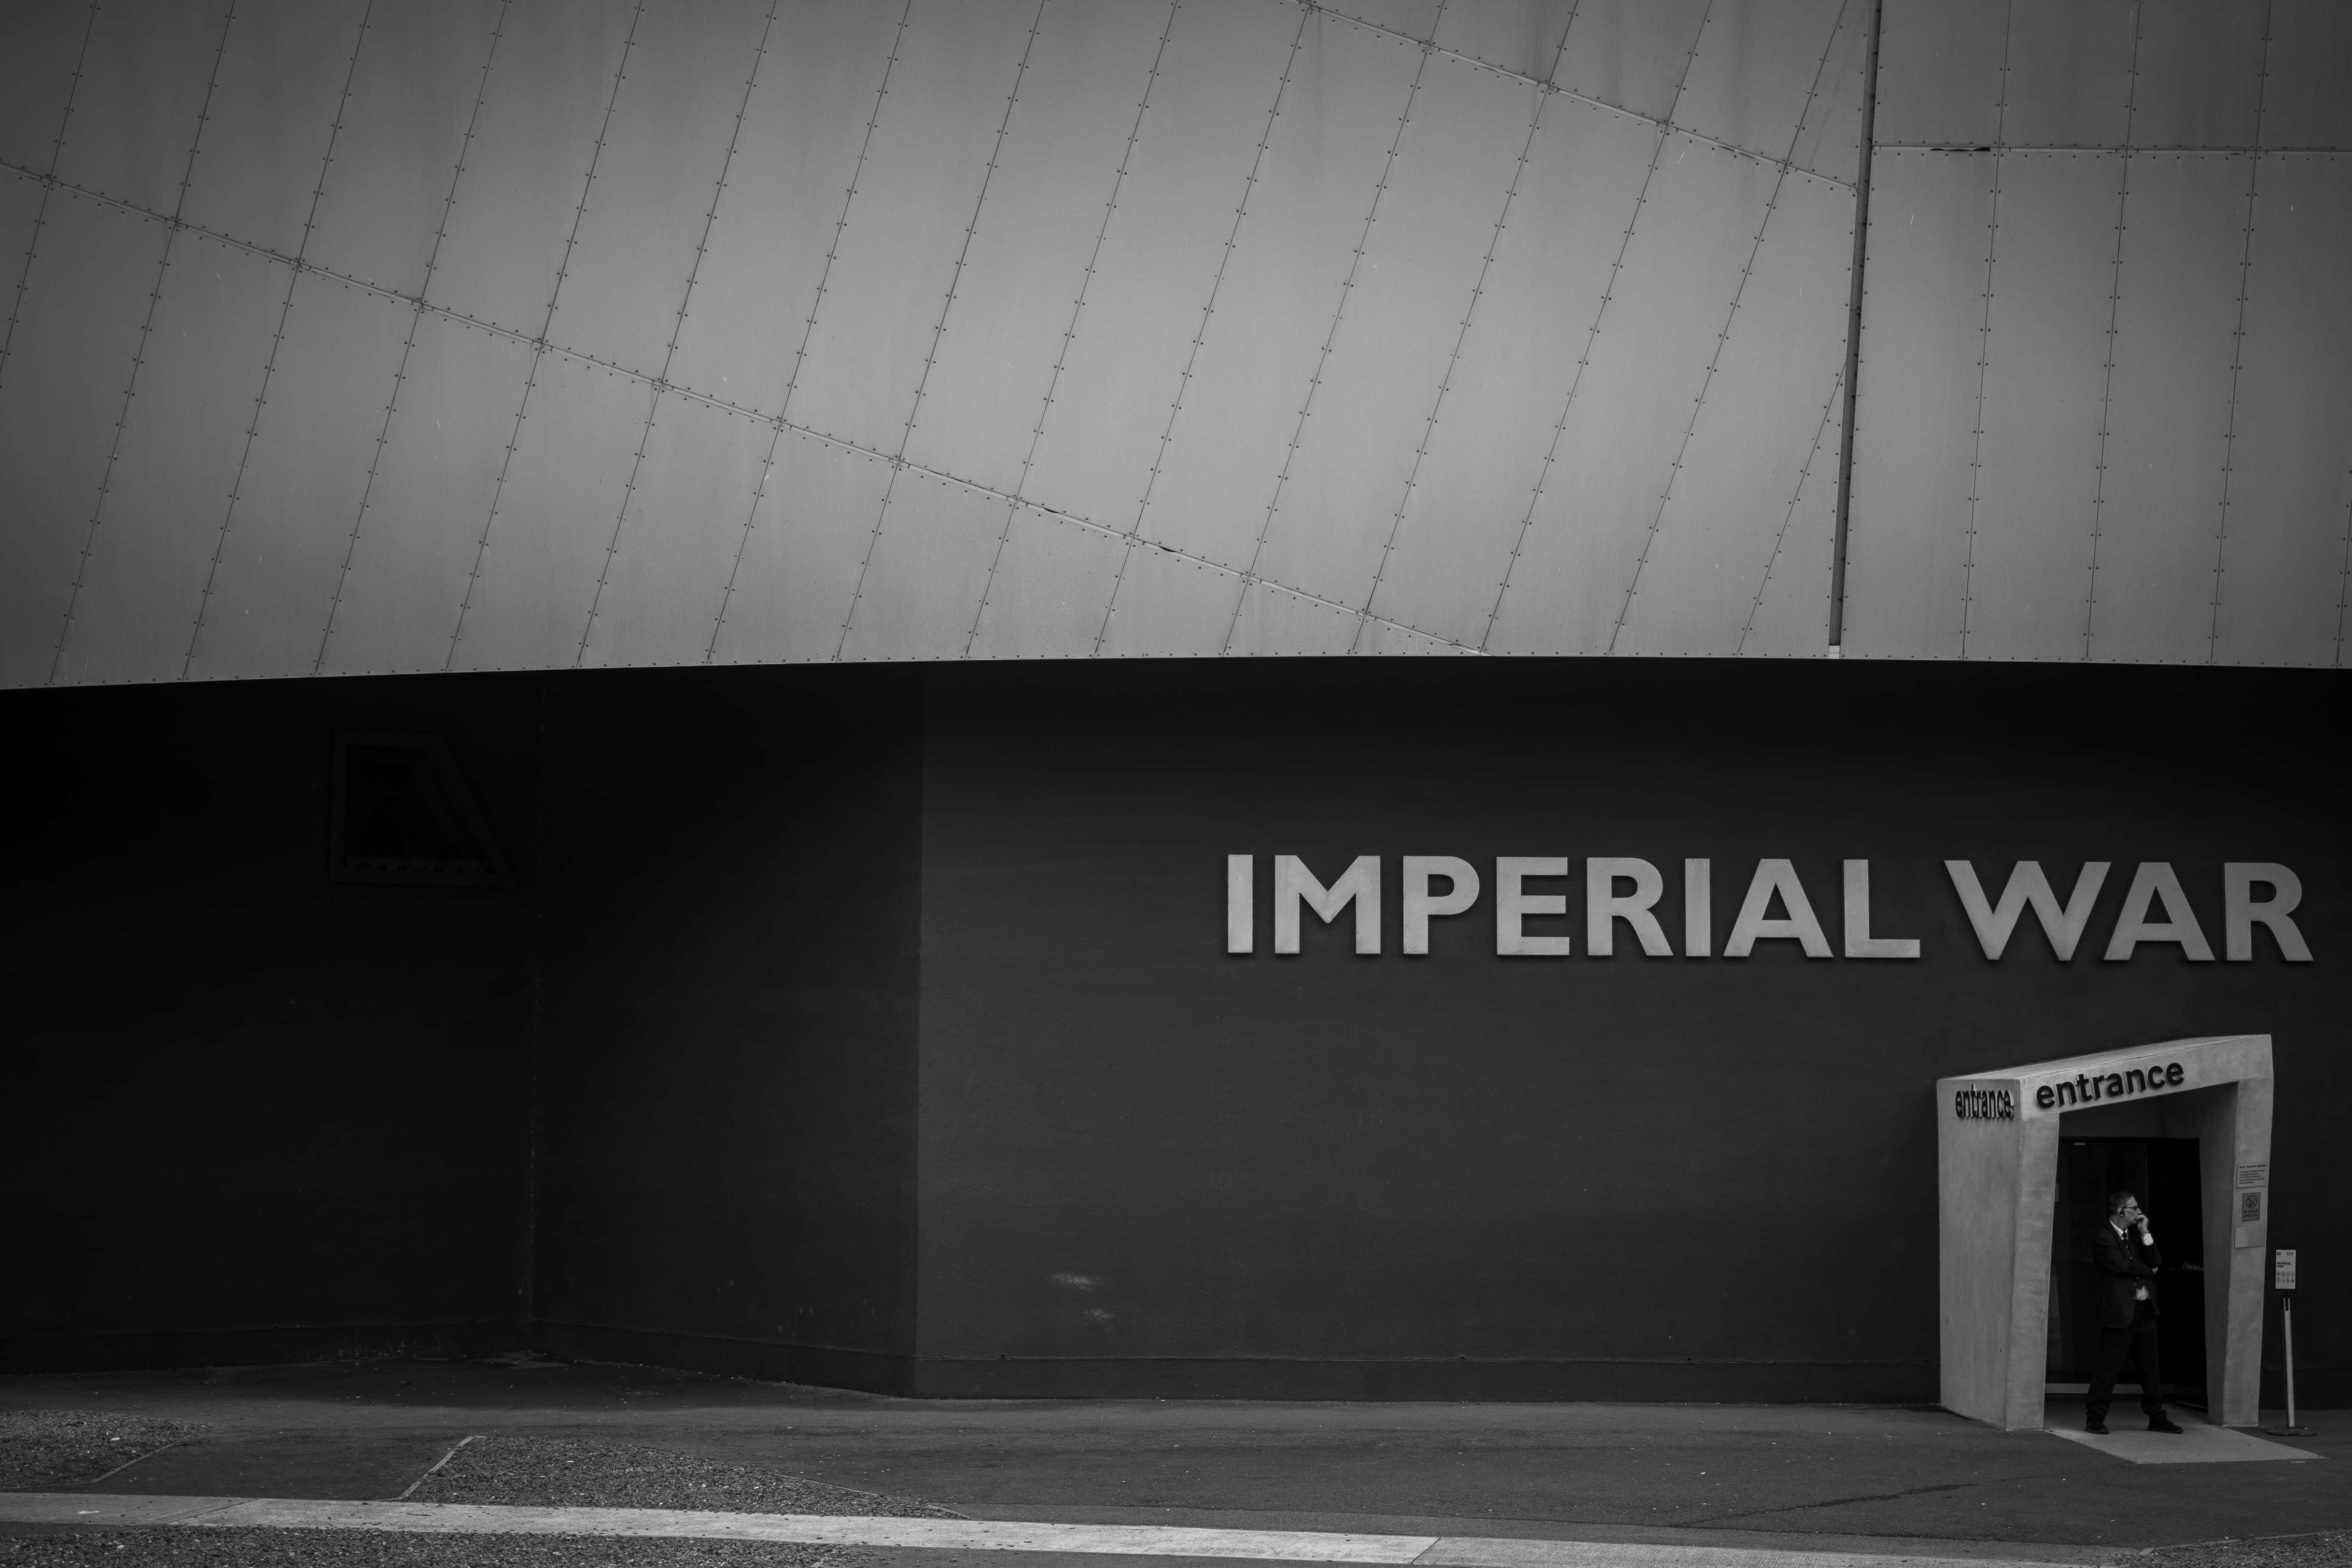 <img src="ep.jpg" alt="Imperial war museum Manchester">